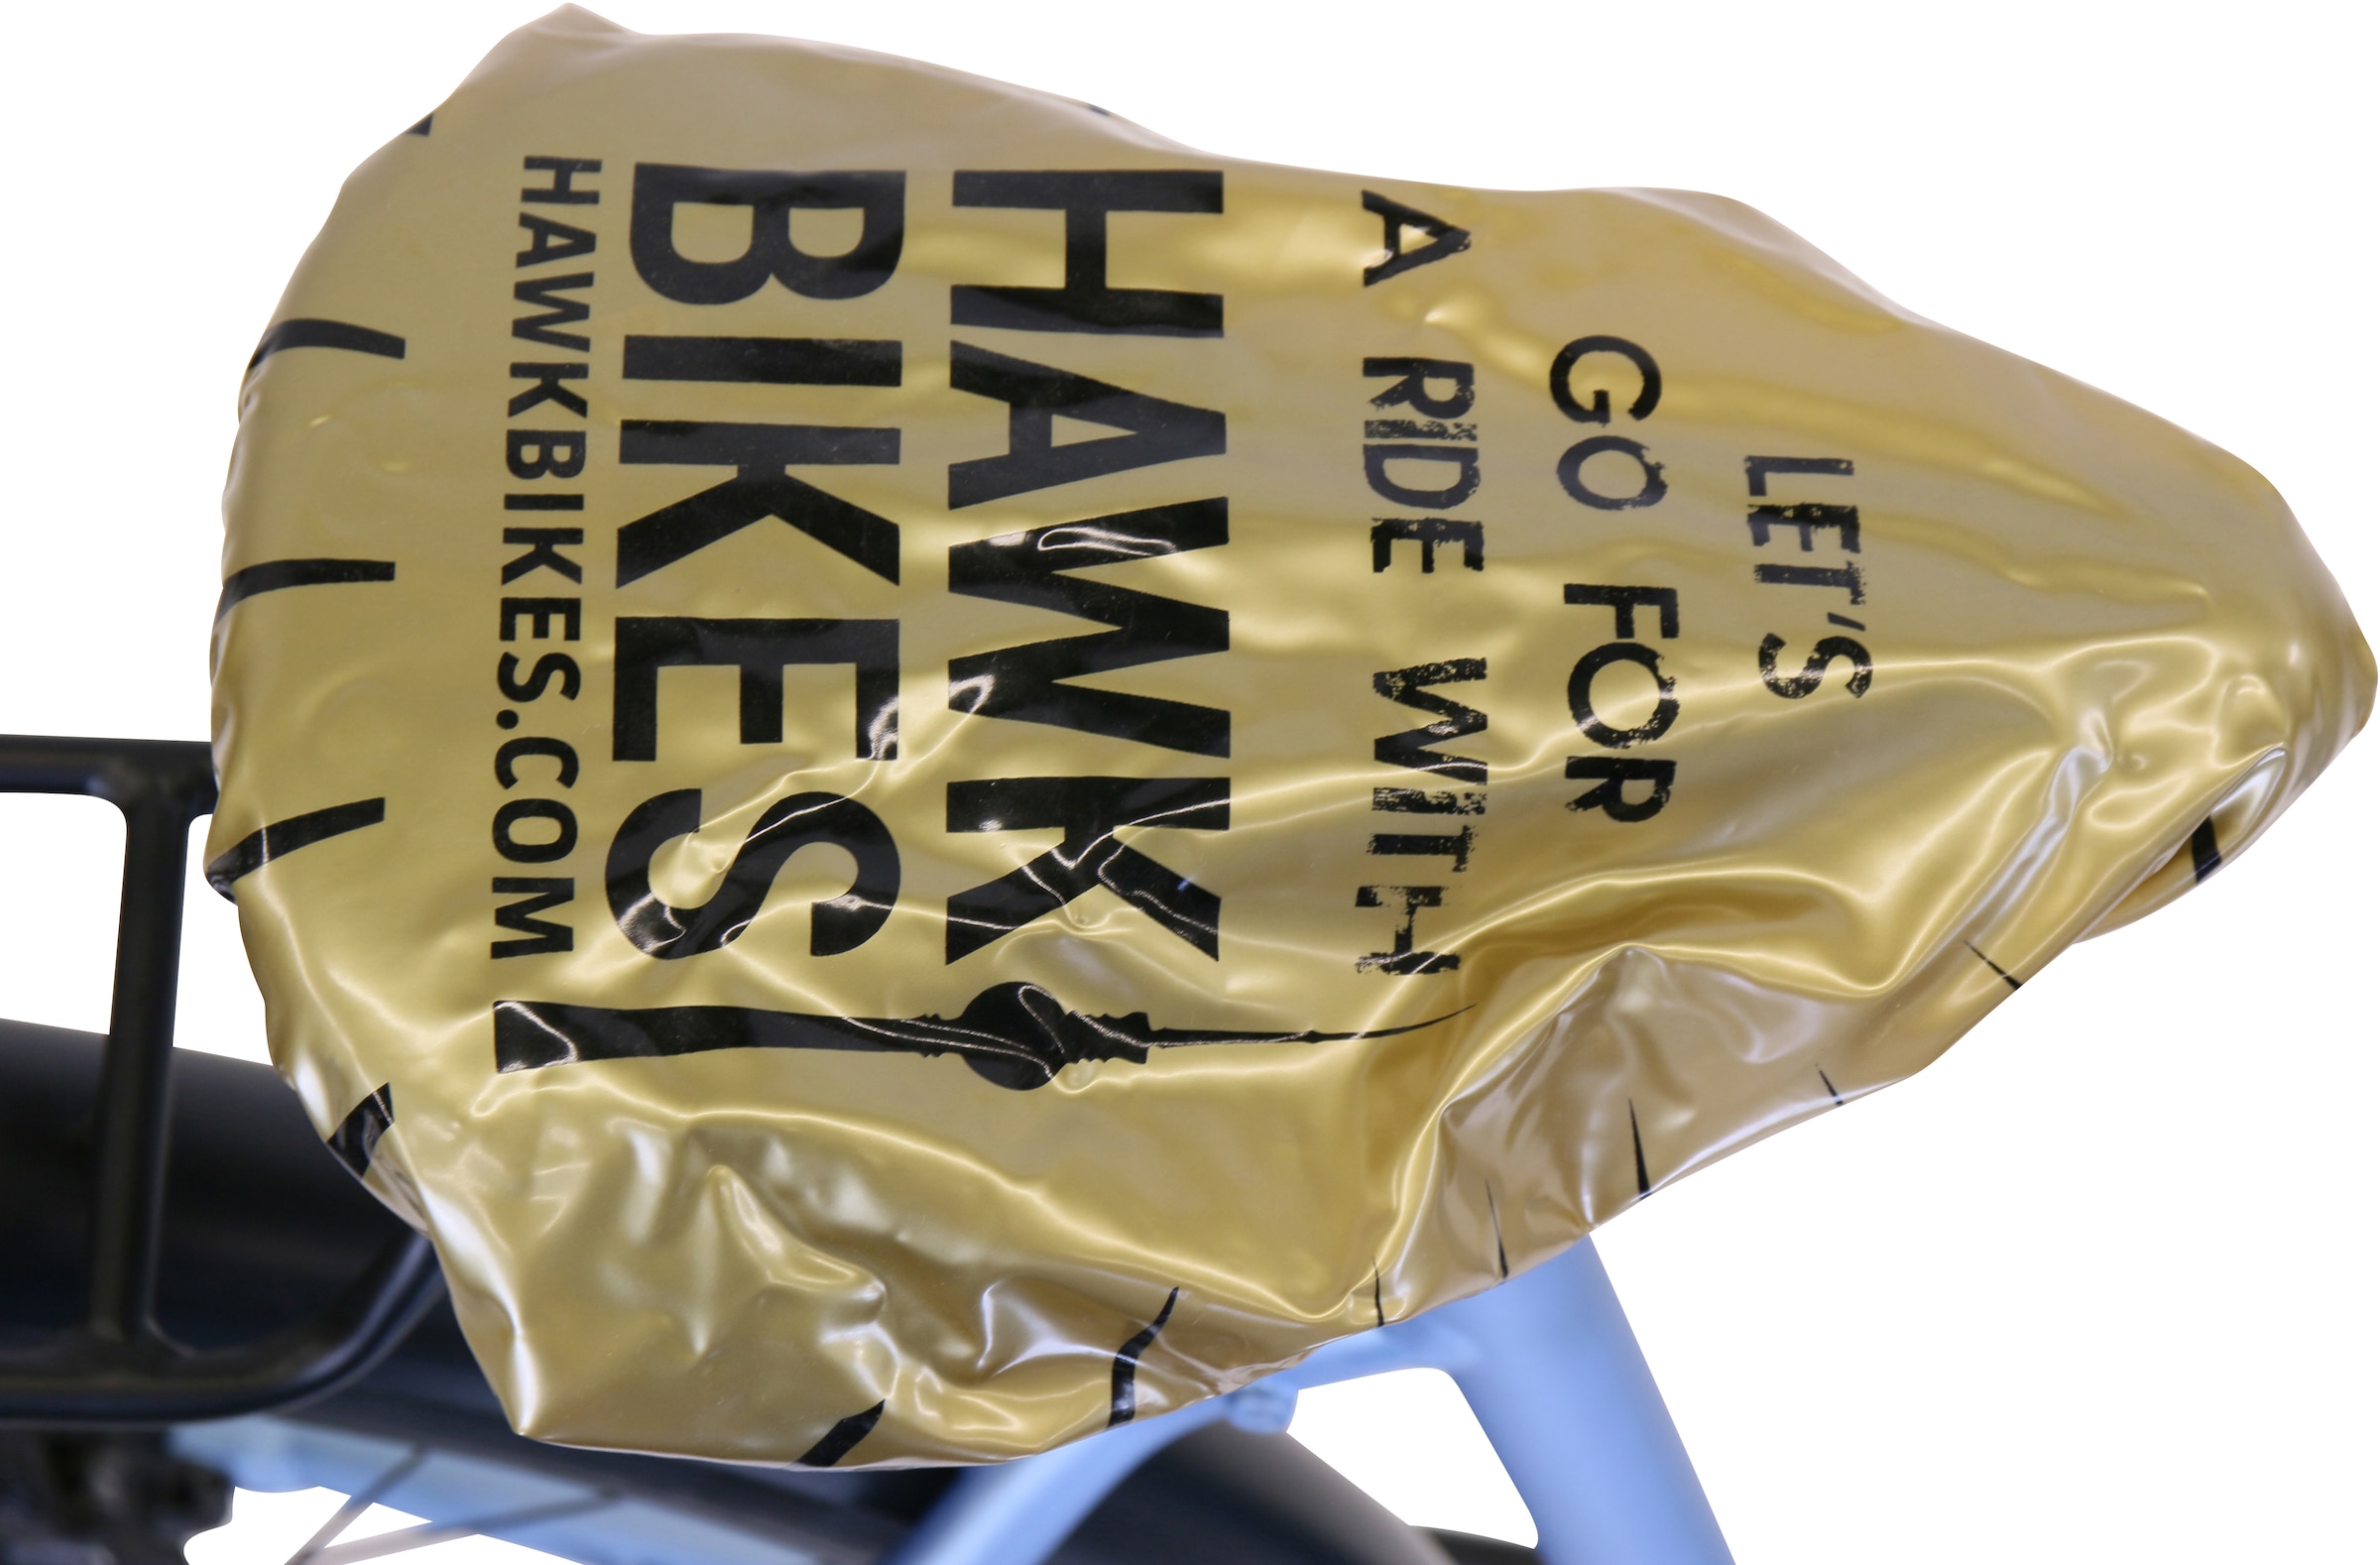 HAWK Bikes Trekkingrad »HAWK Trekking Lady Super Deluxe Plus Sky Blue«, 8 Gang, Shimano, Nexus Schaltwerk